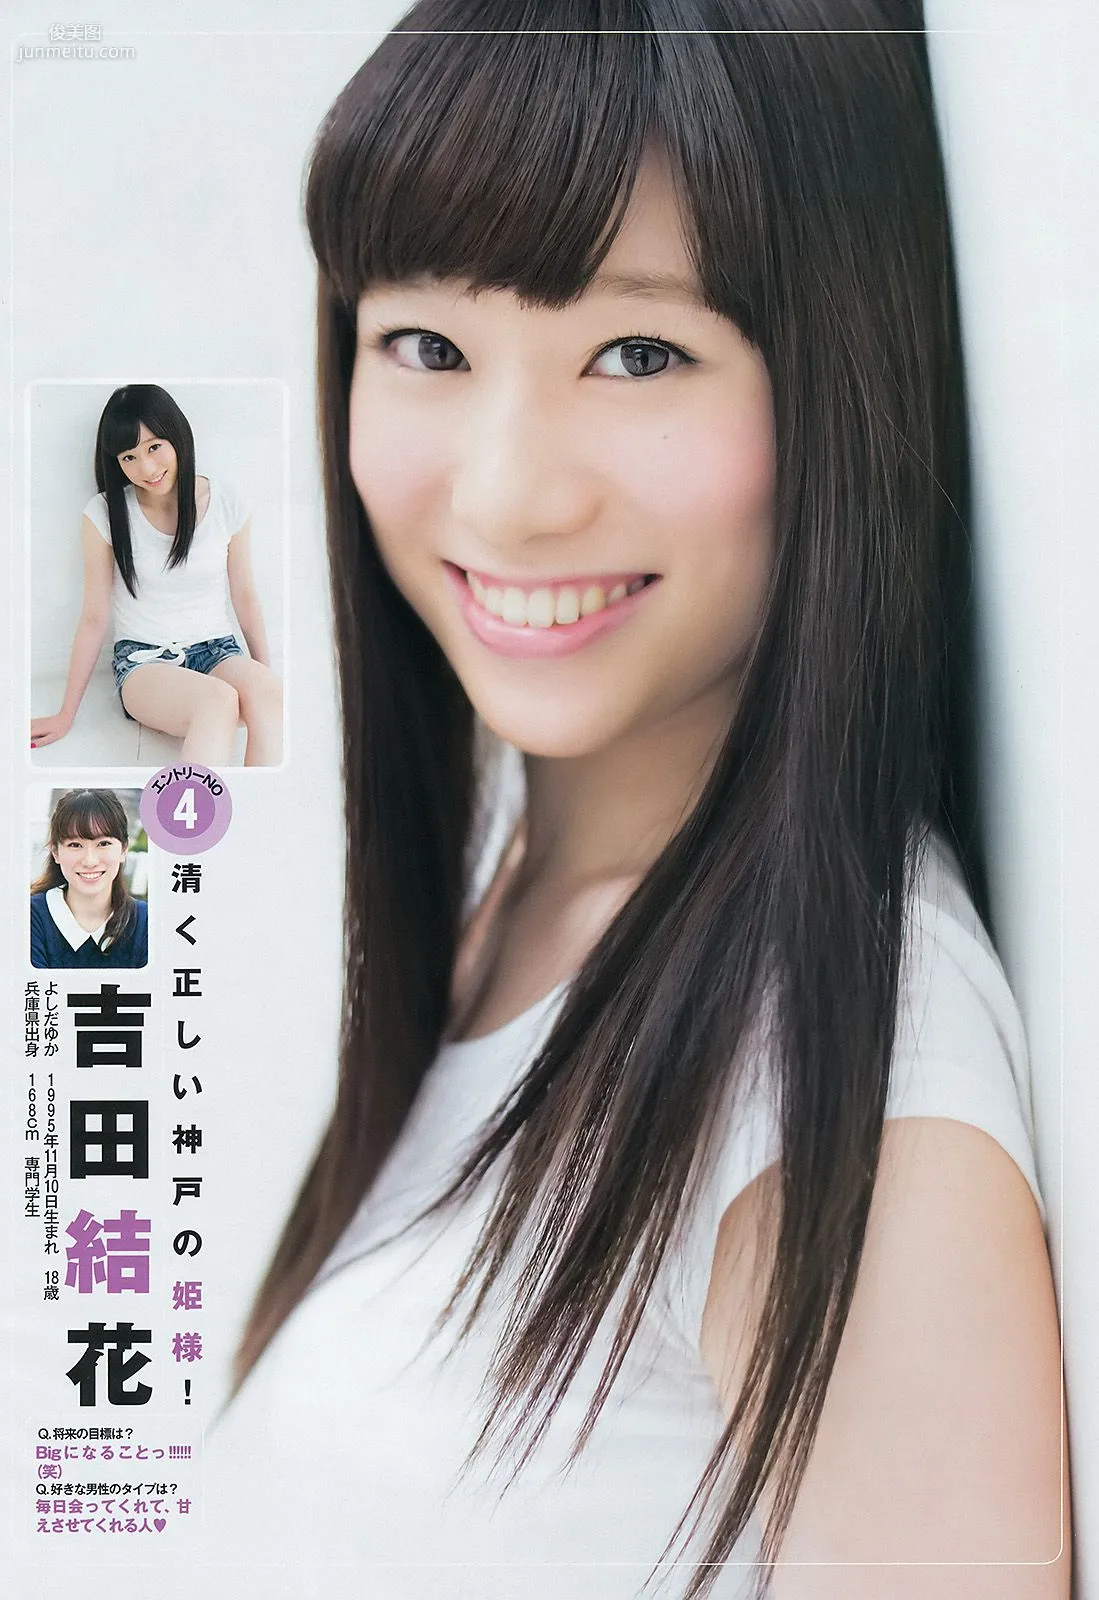 ギャルコン2014 制コレ アルティメット2014 大阪DAIZY7 [Weekly Young Jump] 2014年No.42 写真杂志5